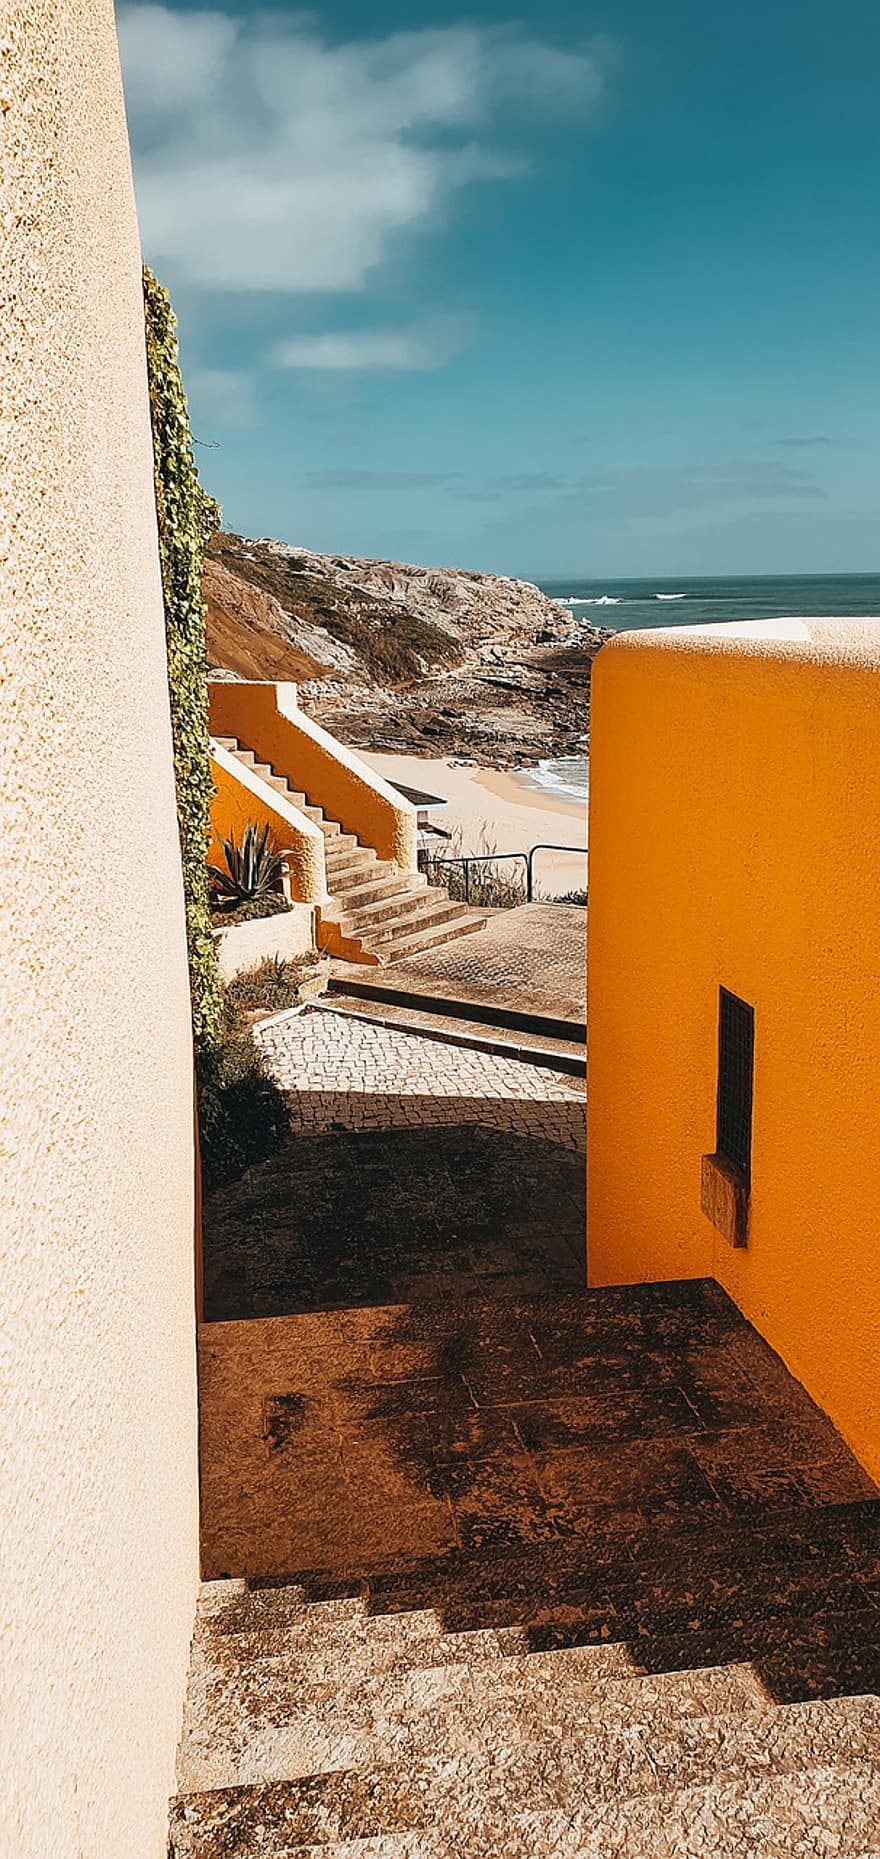 escaliers, immeubles, plage, le sable, océan, Voyage, tourisme, la nature, le Portugal, architecture